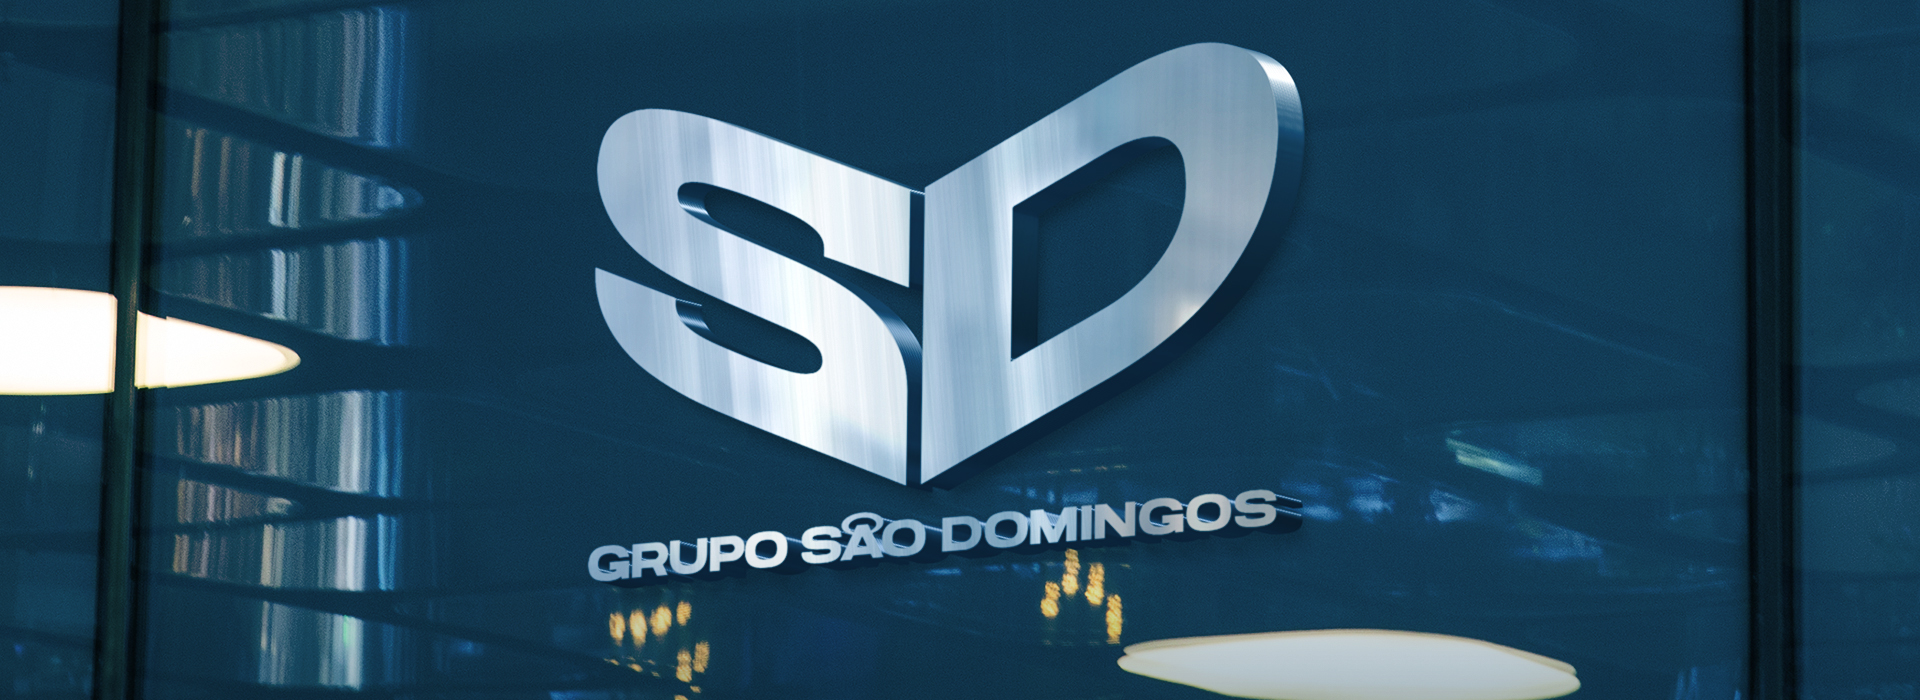 Grupo São Domingos - O Clube de Amigos SD cresceu! Agora você pode